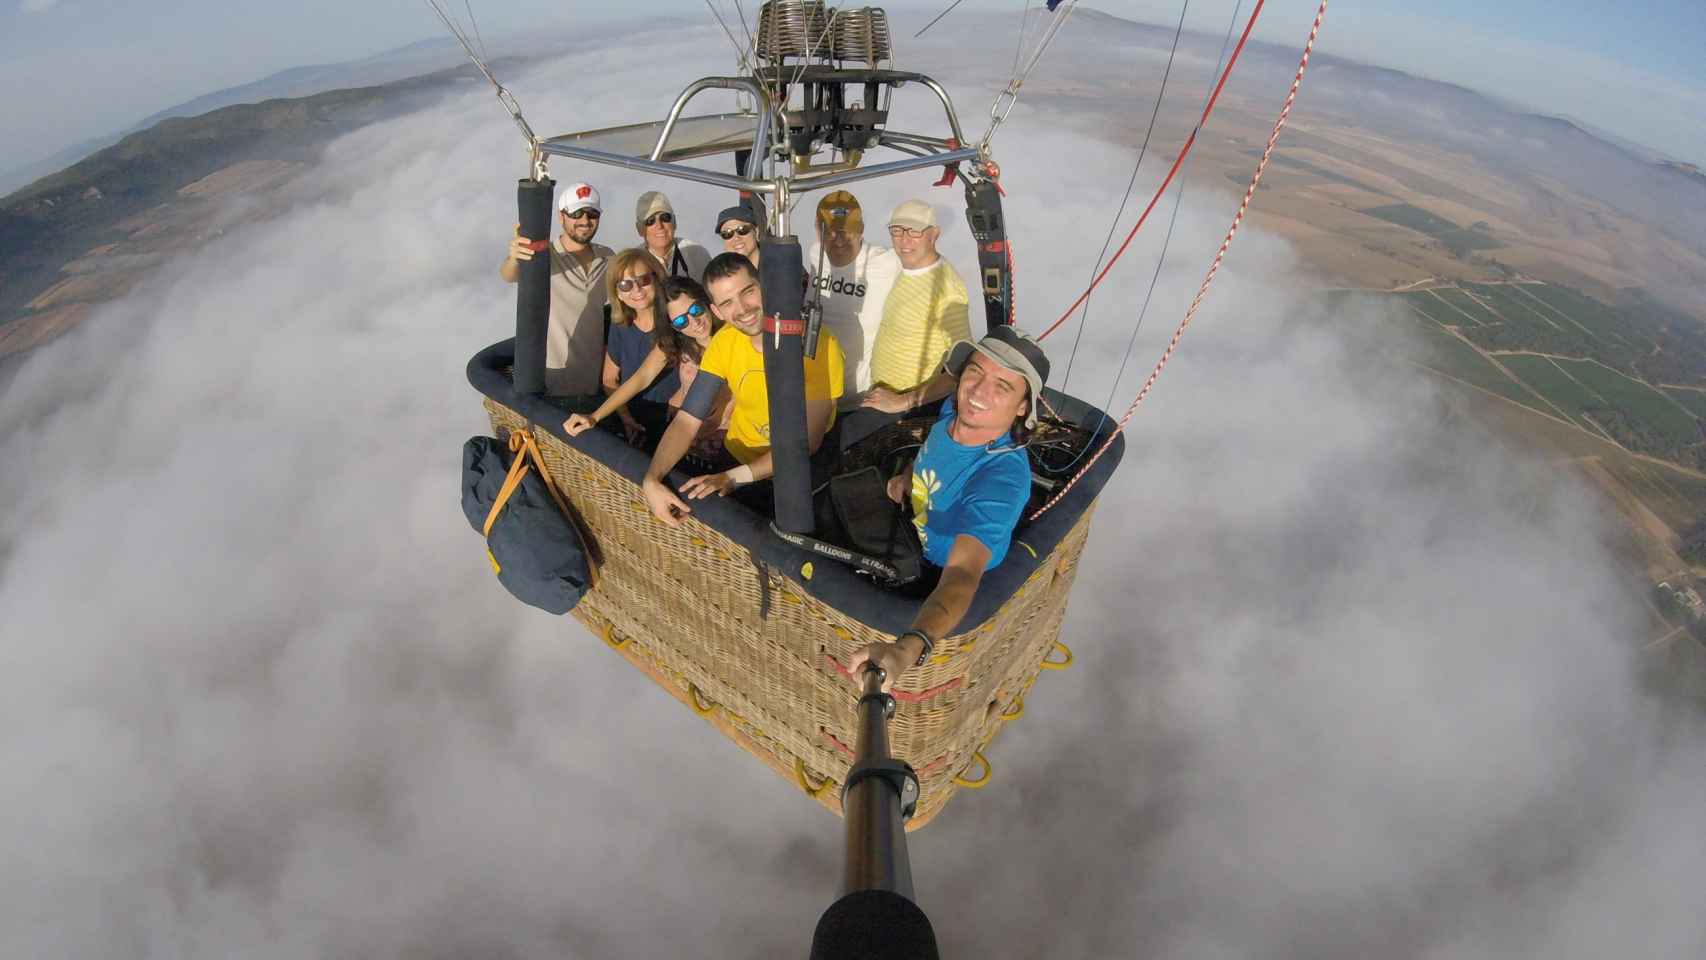 Experiencia de volar en globo en Bocairent. Totglobo